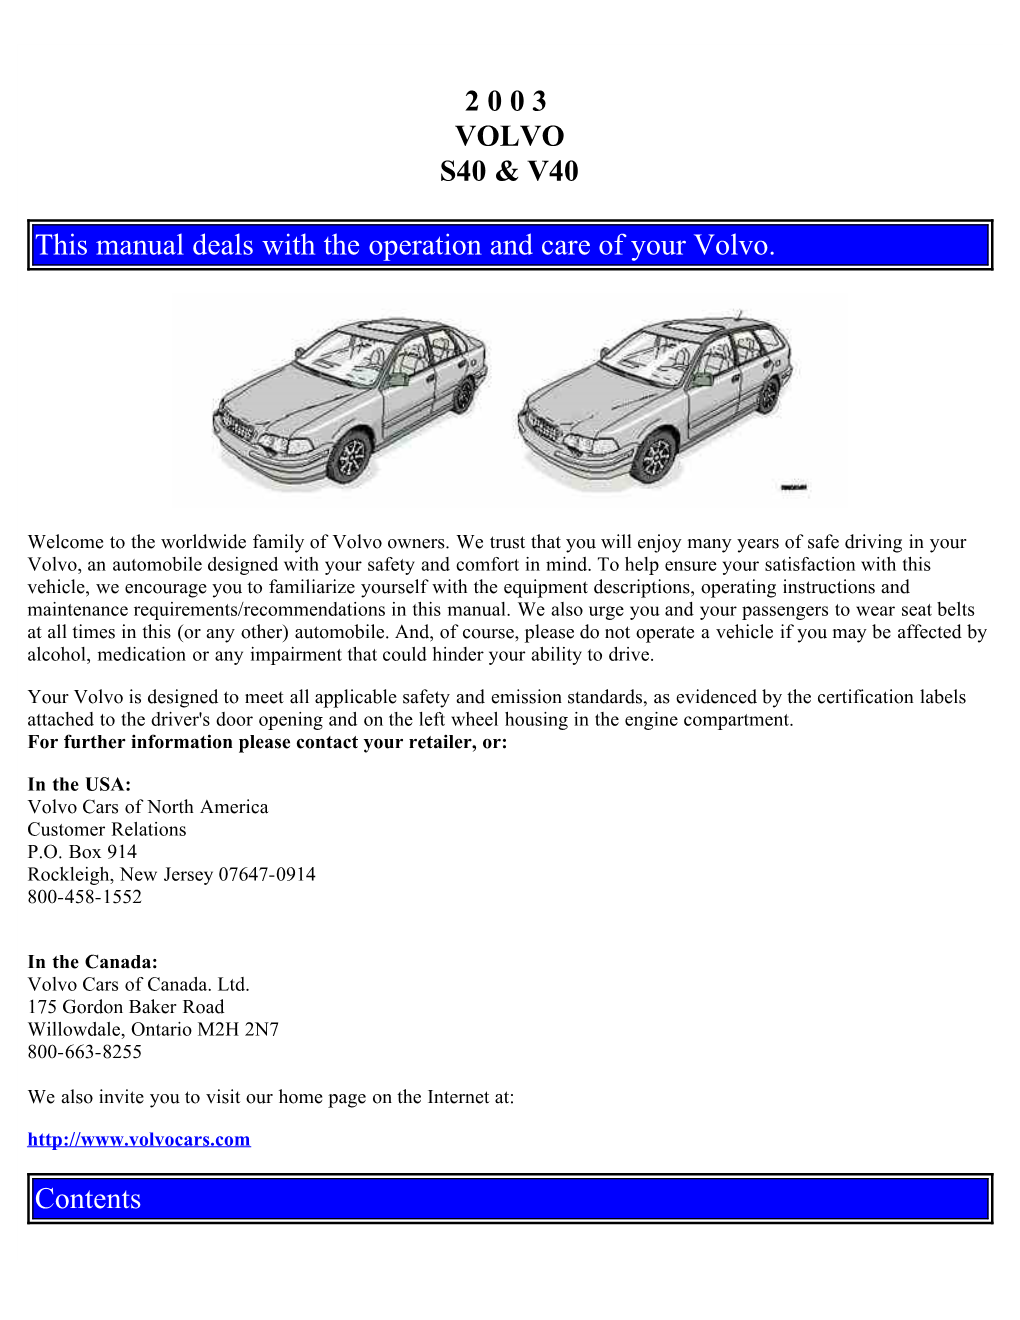 2003 Volvo S40-V40 Owner's Manual